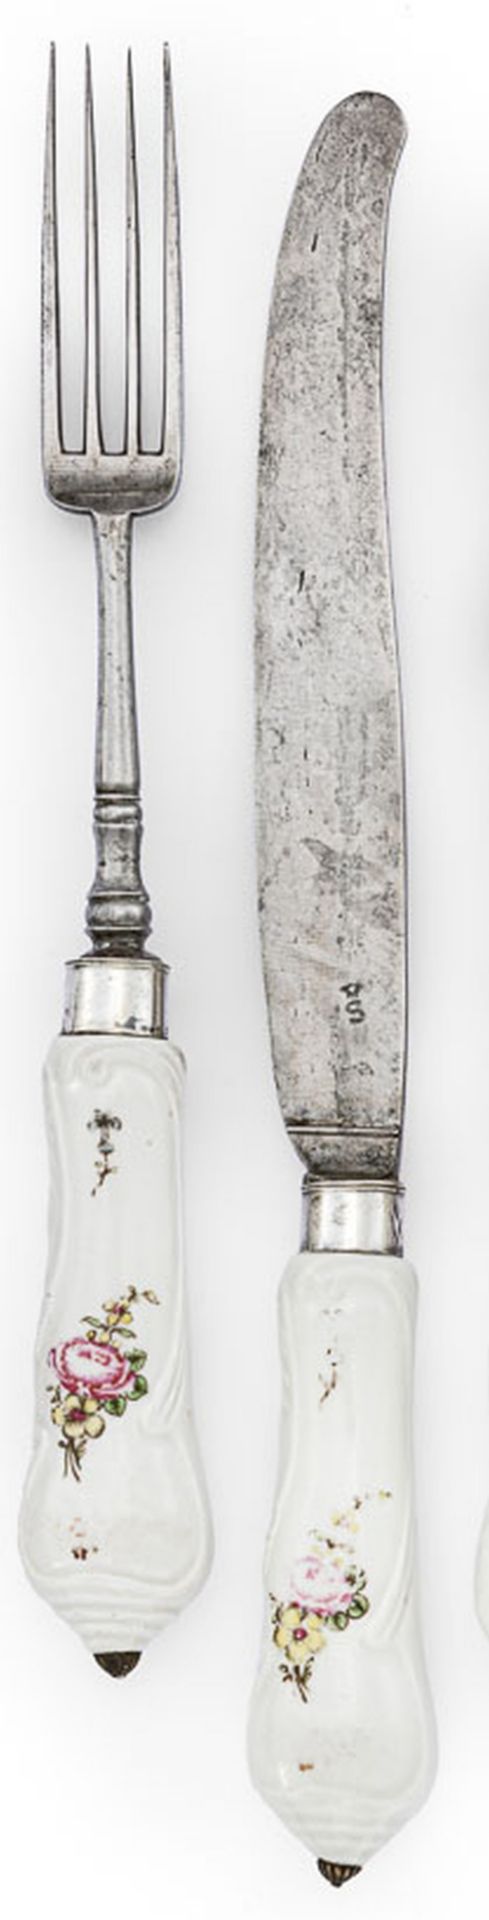 Messer und Gabel mit RosendekorMeissen, um 1750Gering geschweifte Griffe mit Rocaill